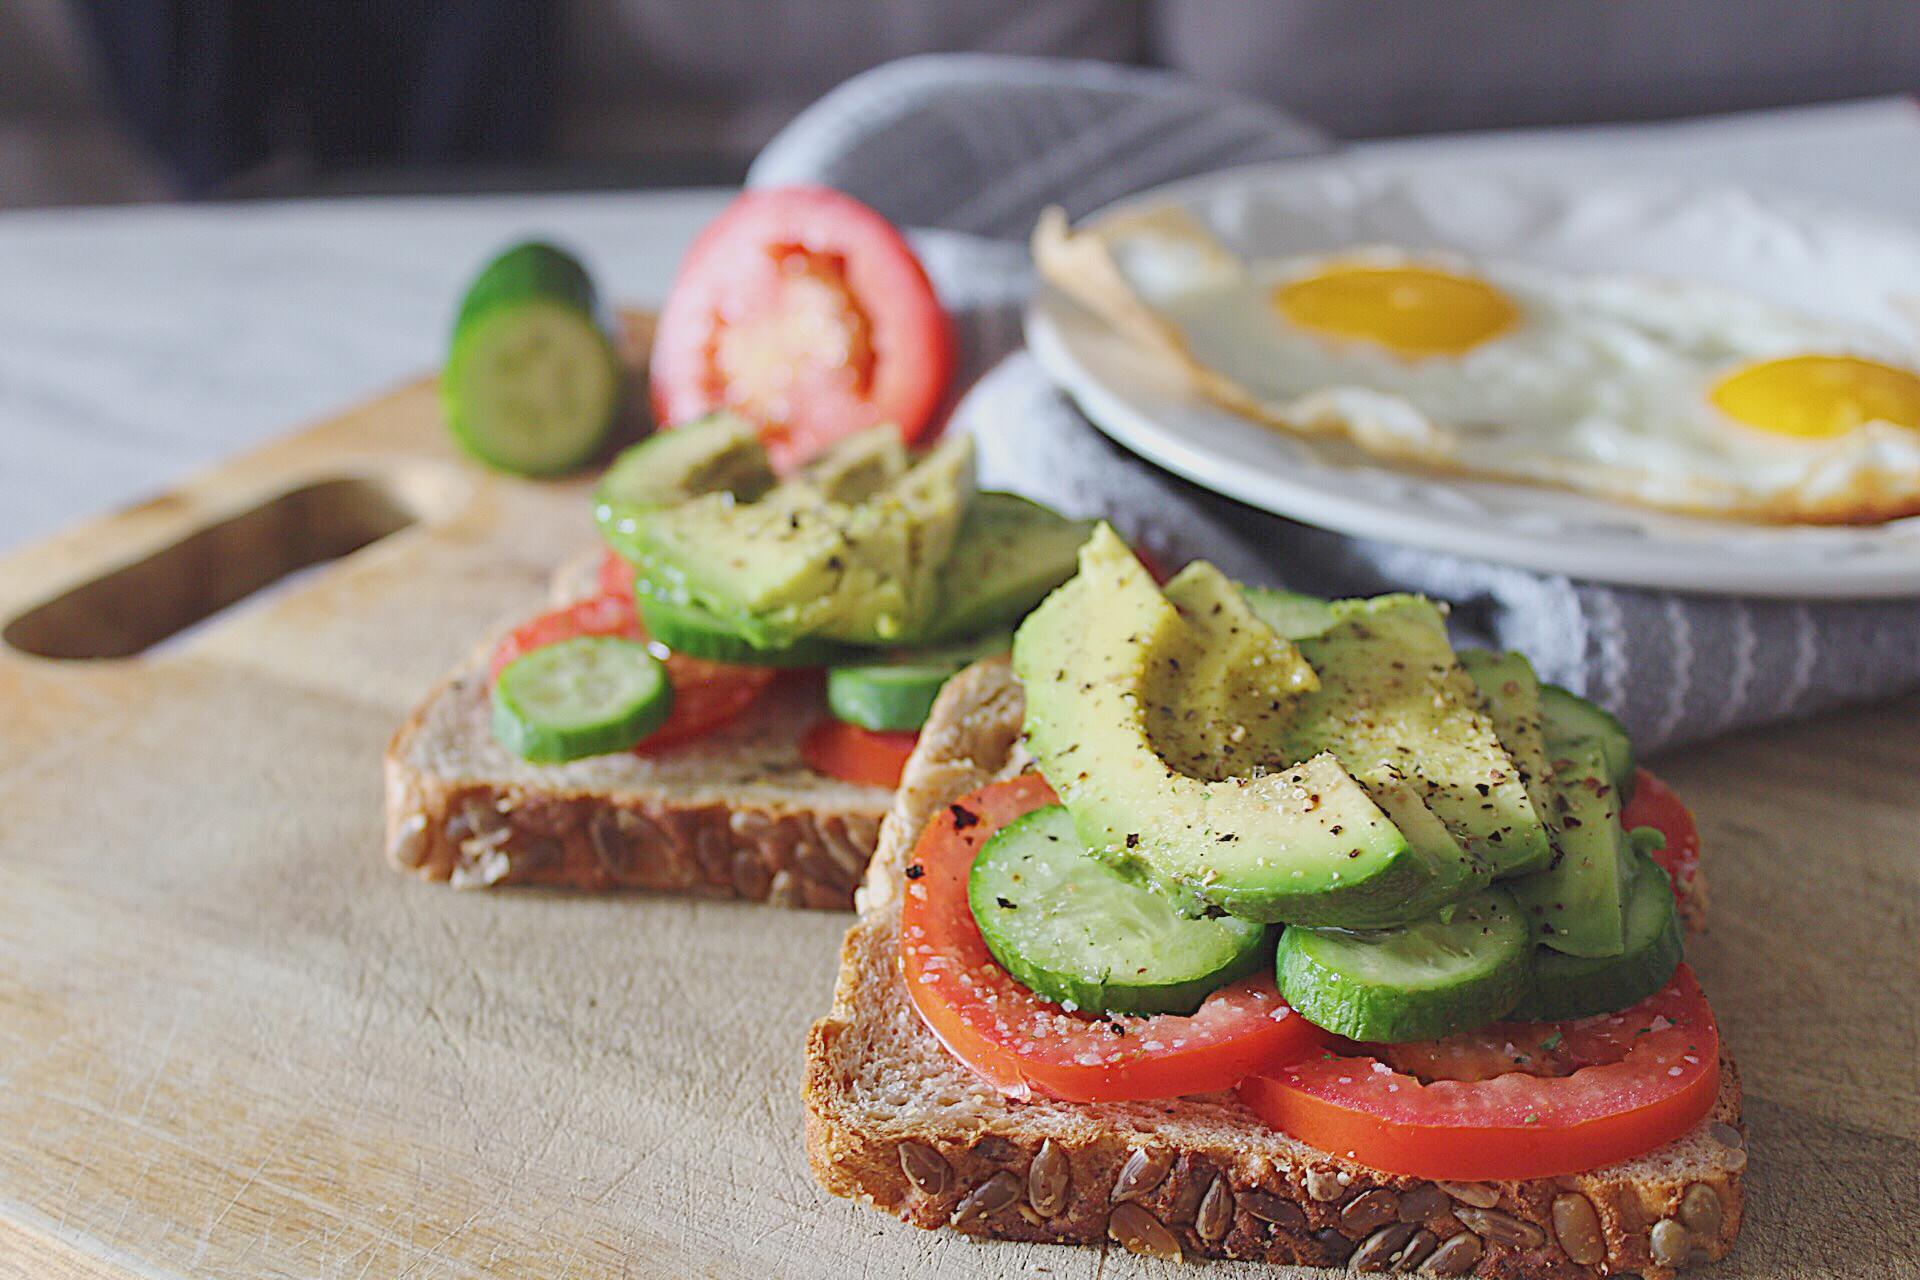 Easy Avocado Toast - Healthy Breakfast Idea | Jenn's ...